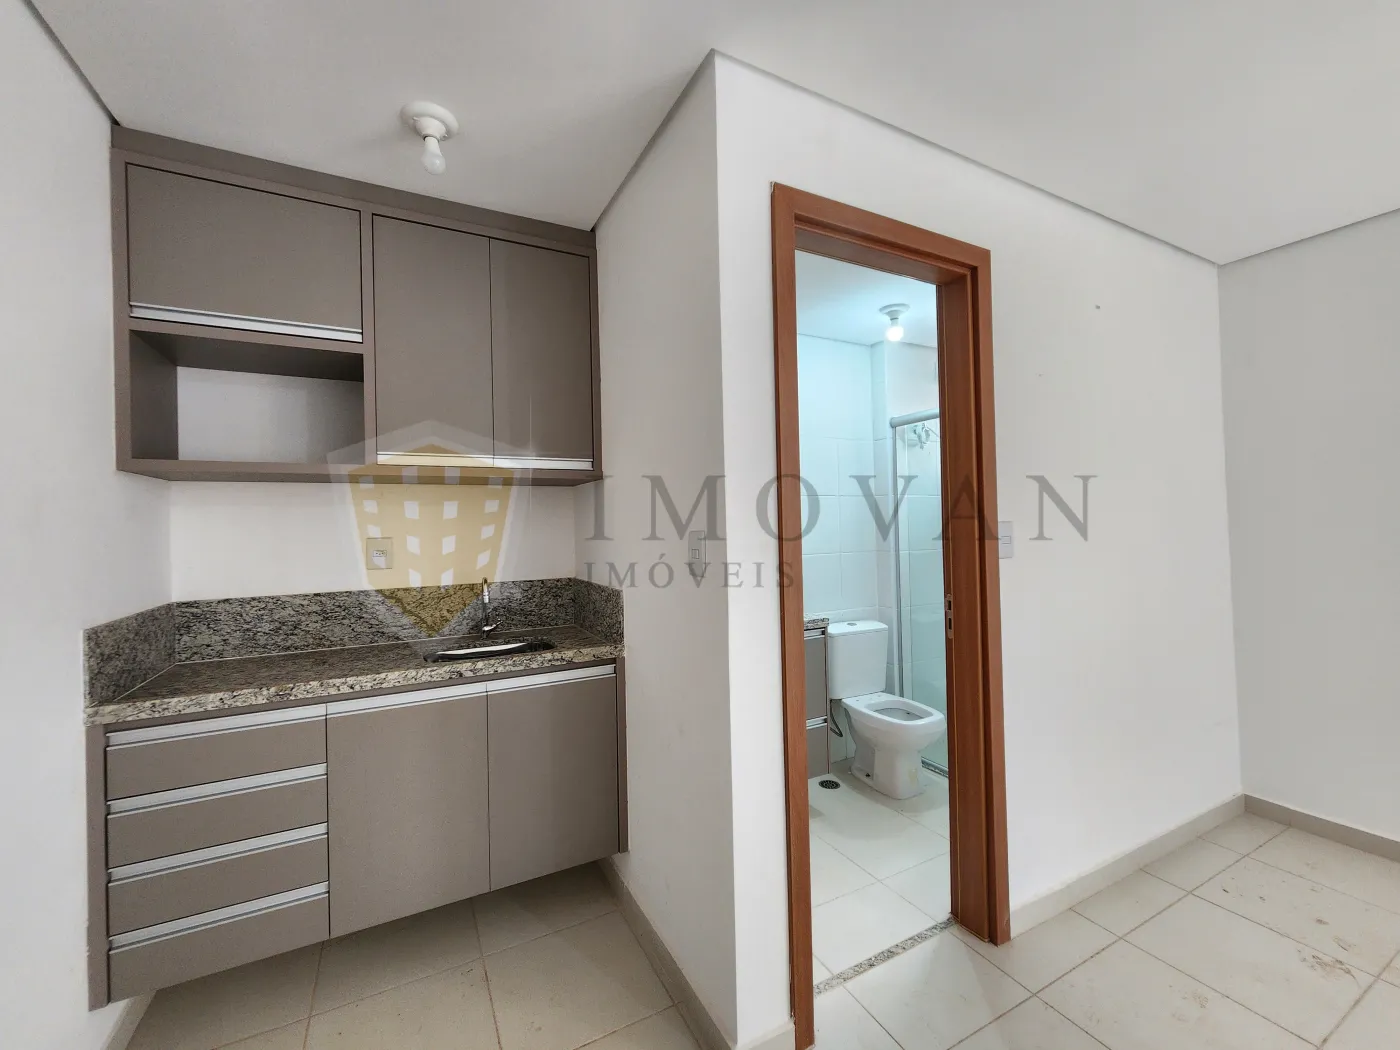 Alugar Apartamento / Kitchnet em Ribeirão Preto R$ 1.100,00 - Foto 6